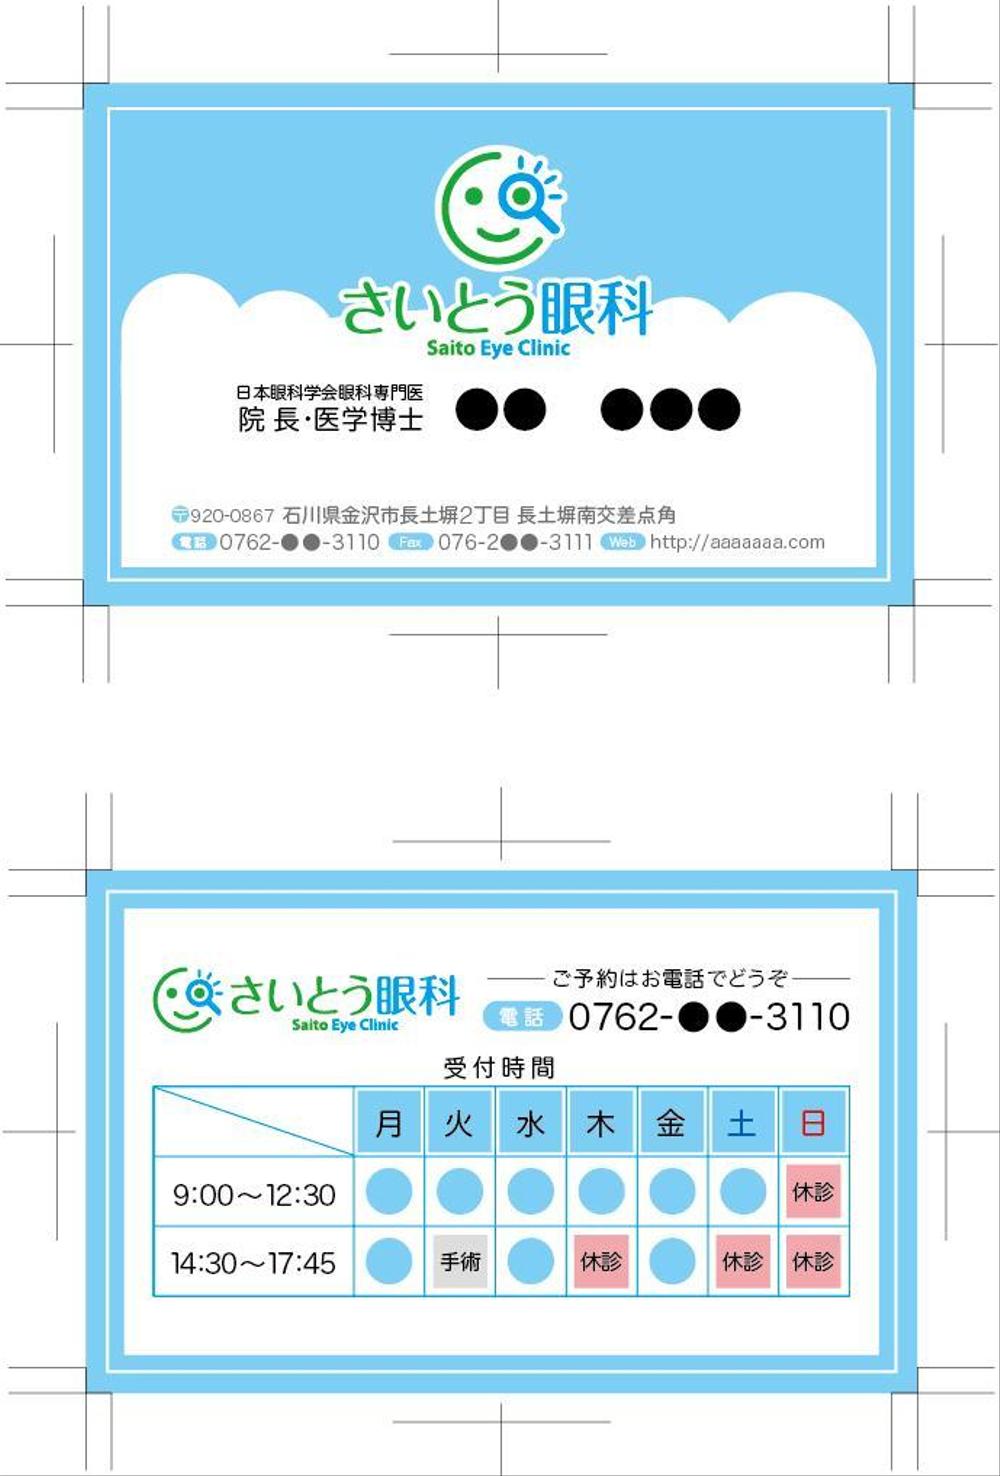 saitou_eyeclinic_logo_01.jpg